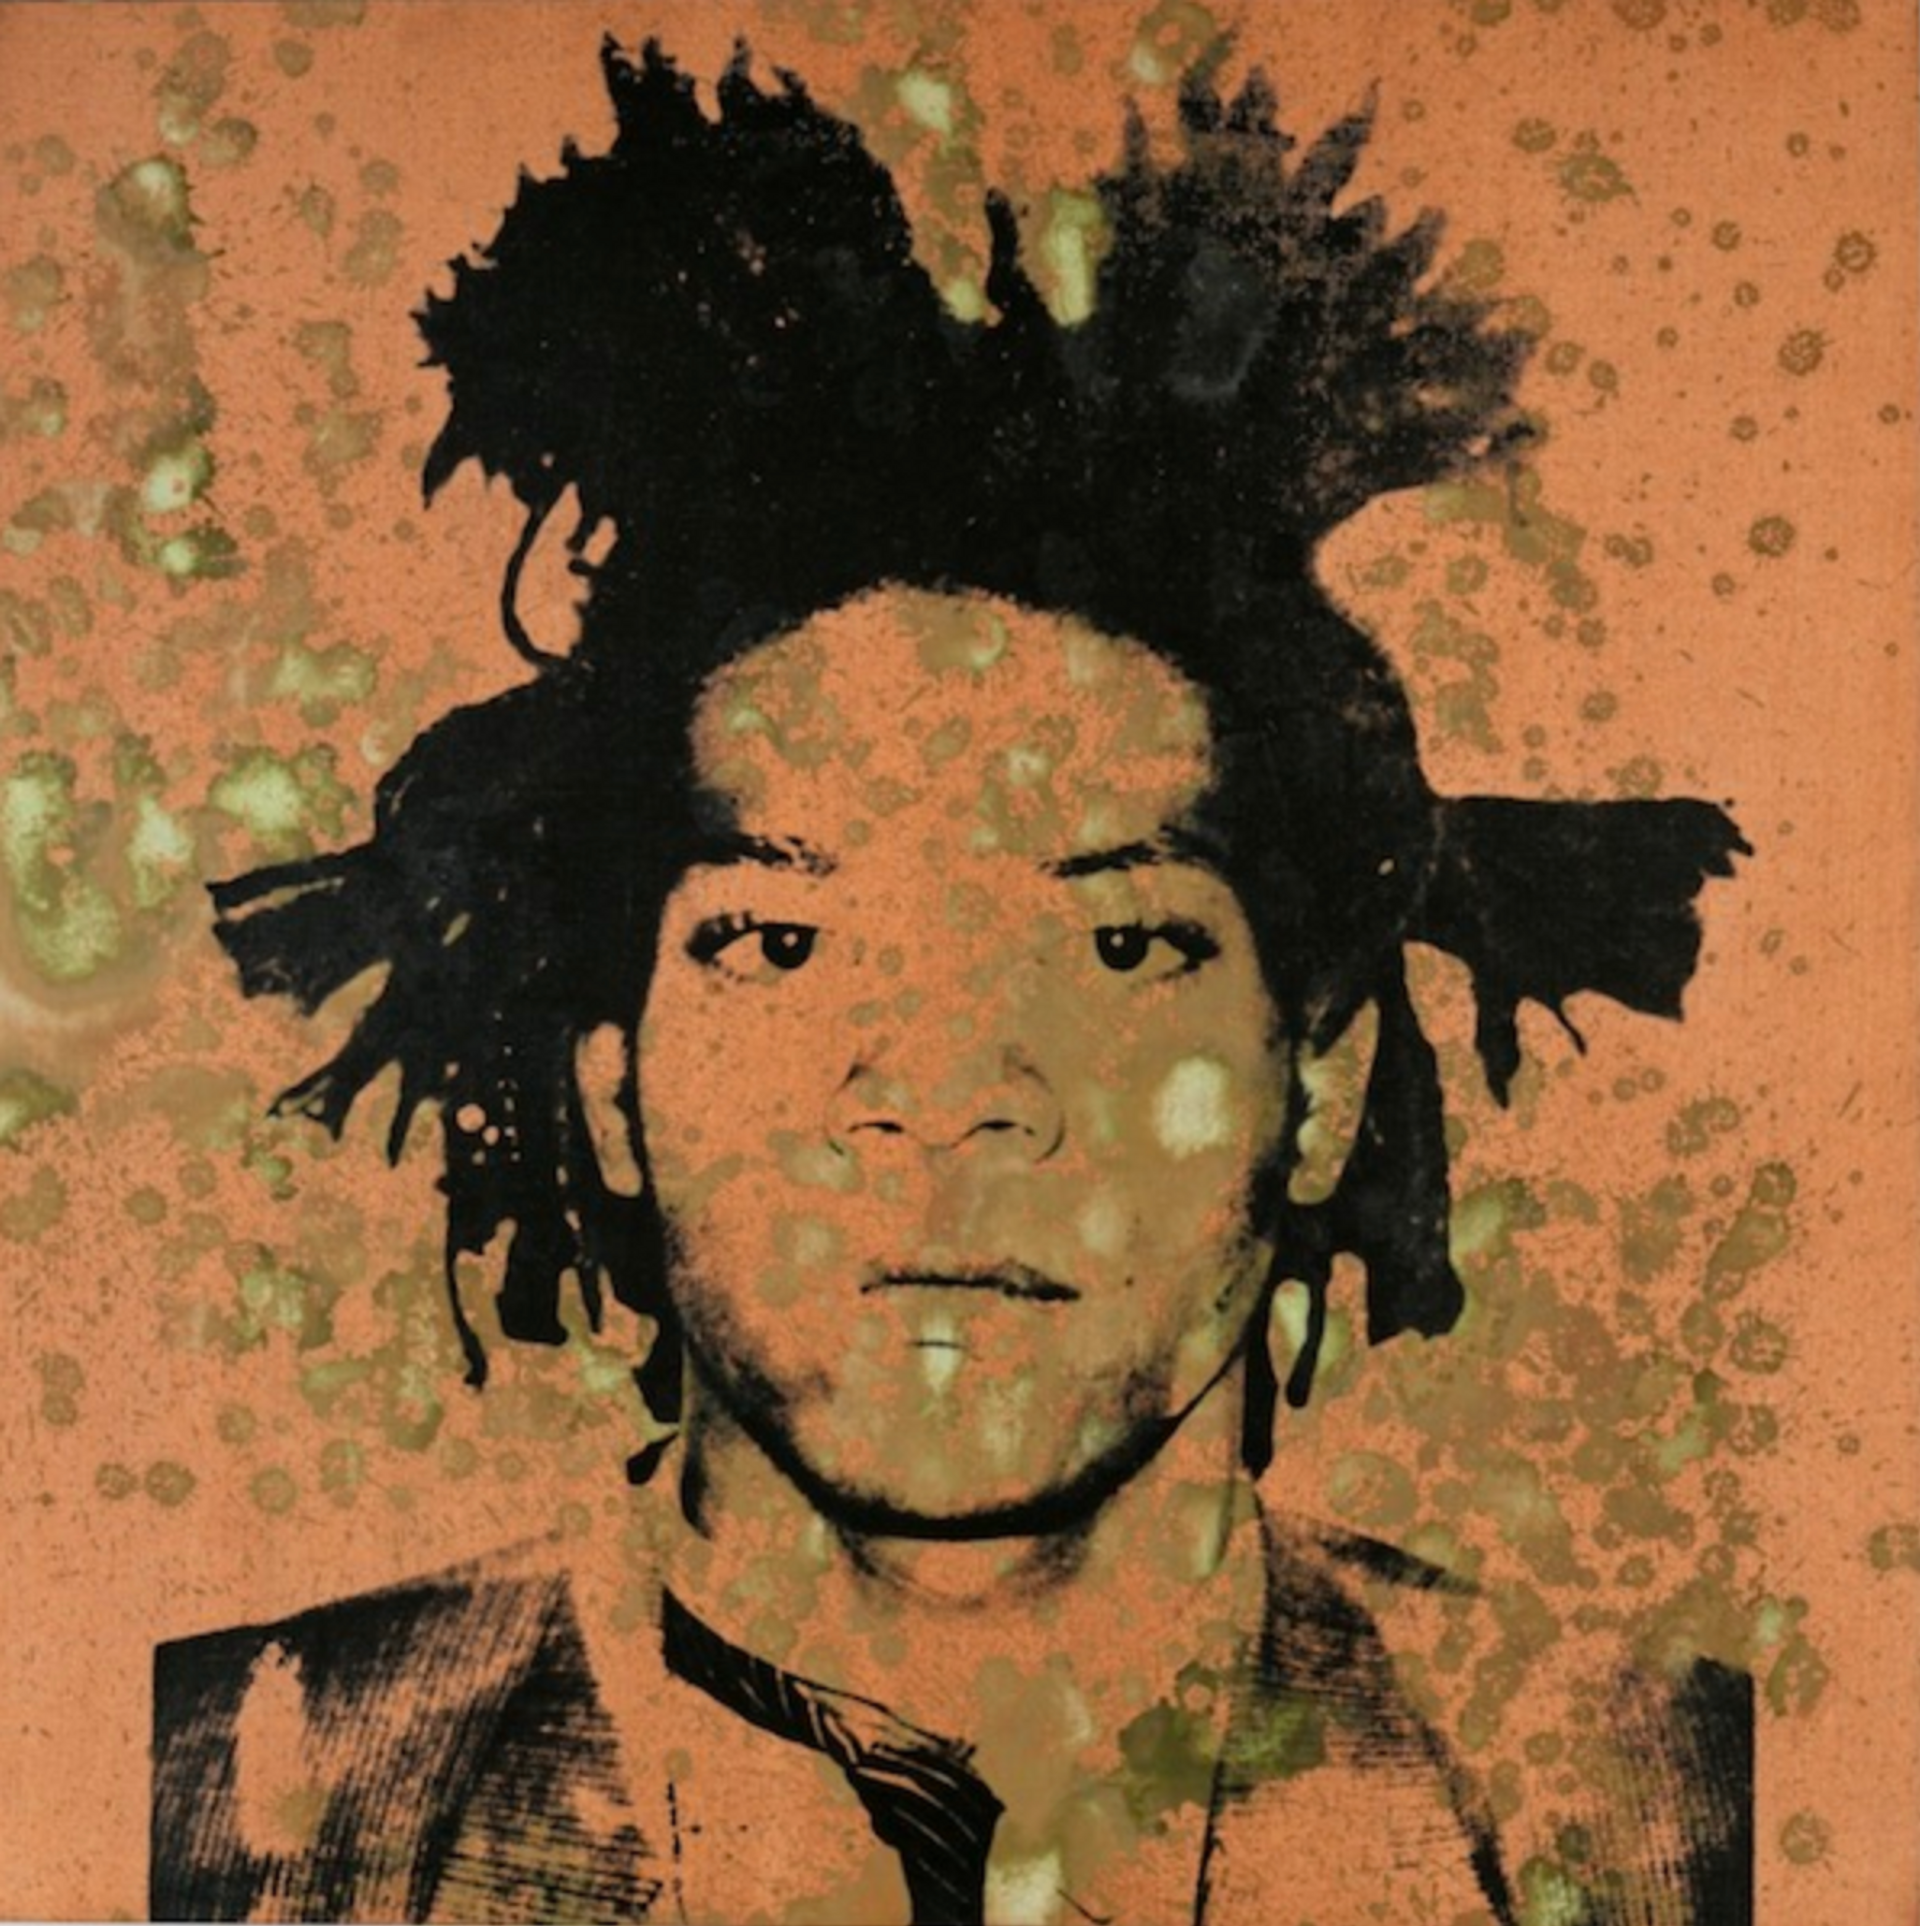 Jean-Michel Basquiat by Andy Warhol - MyArtBroker